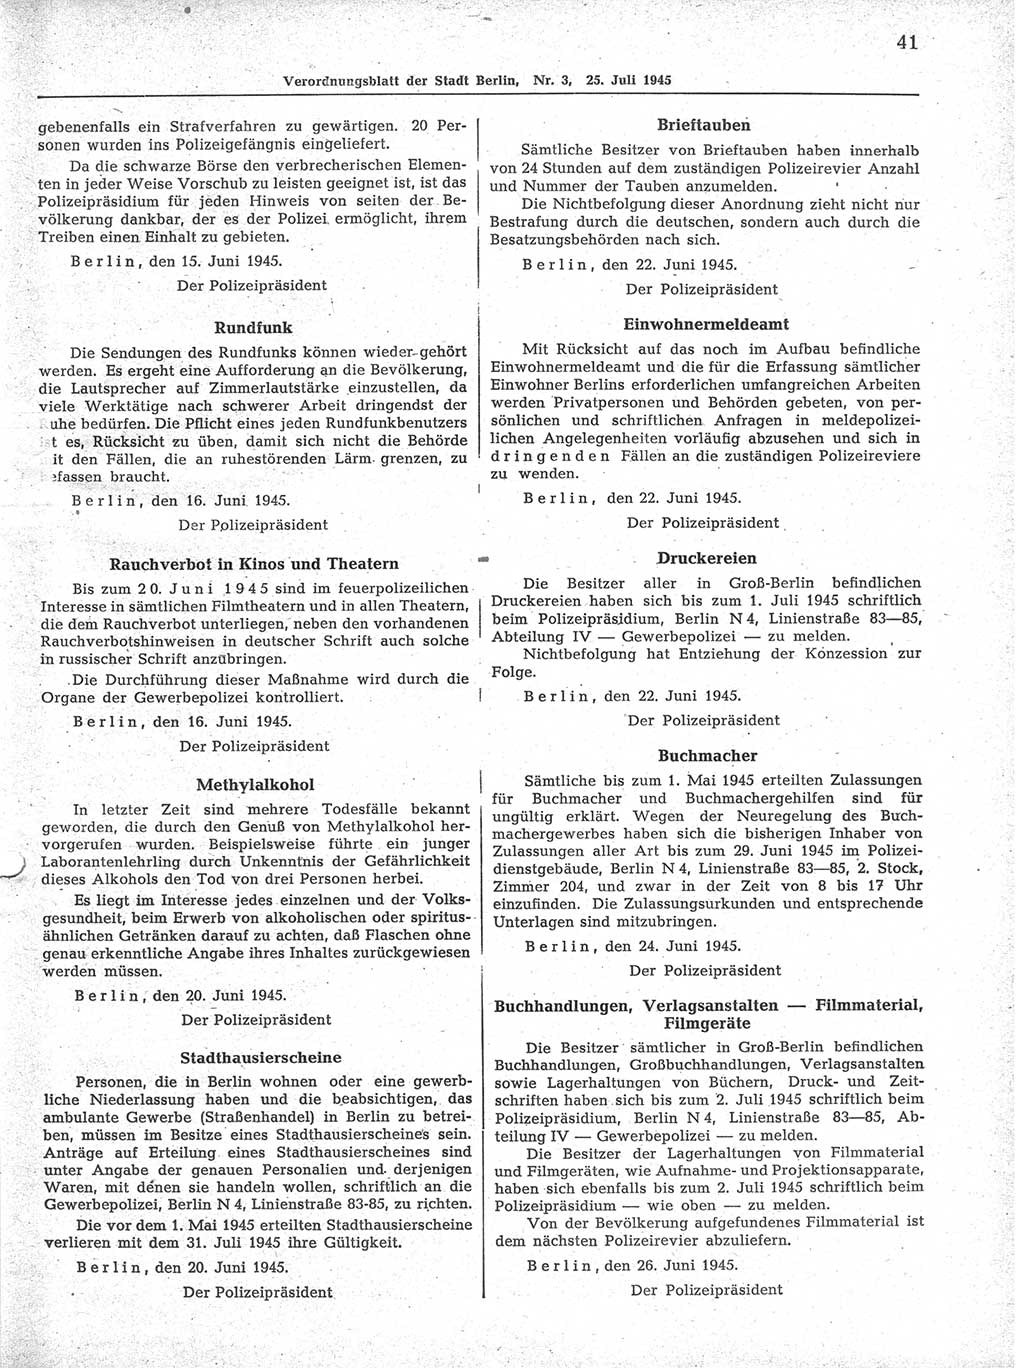 Verordnungsblatt (VOBl.) der Stadt Berlin 1945, Seite 41 (VOBl. Bln. 1945, S. 41)